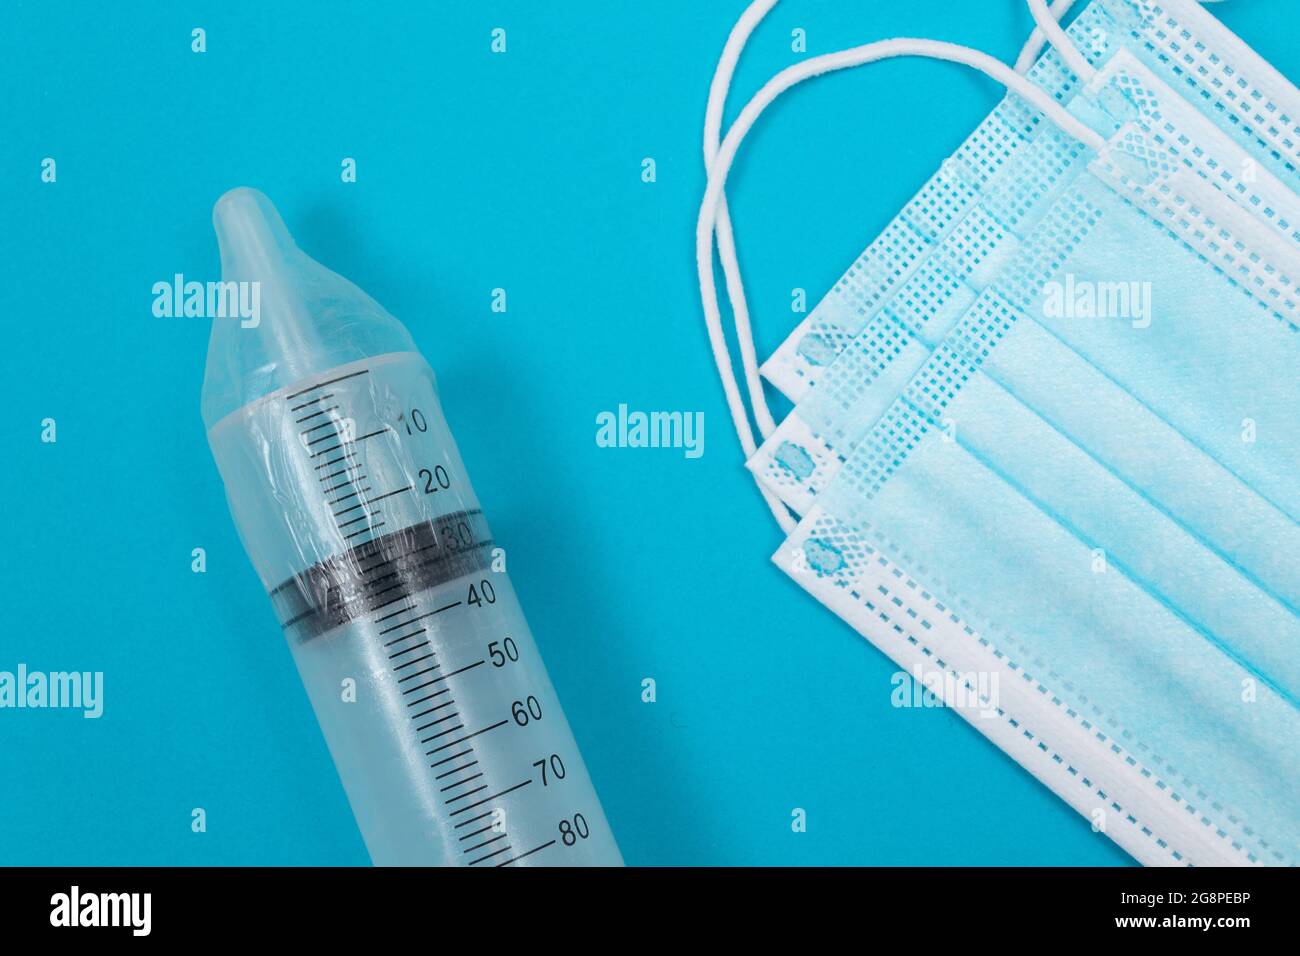 Vaccin sûr, anti-vaccin concept - seringue dans un condom se trouve sur la table bleue en clinique ou à l'hôpital. Méfiance à l'égard de la vaccination. Immunité naturelle. Scepticisme à propos du vaccin. Liberté et droits de l'homme Banque D'Images